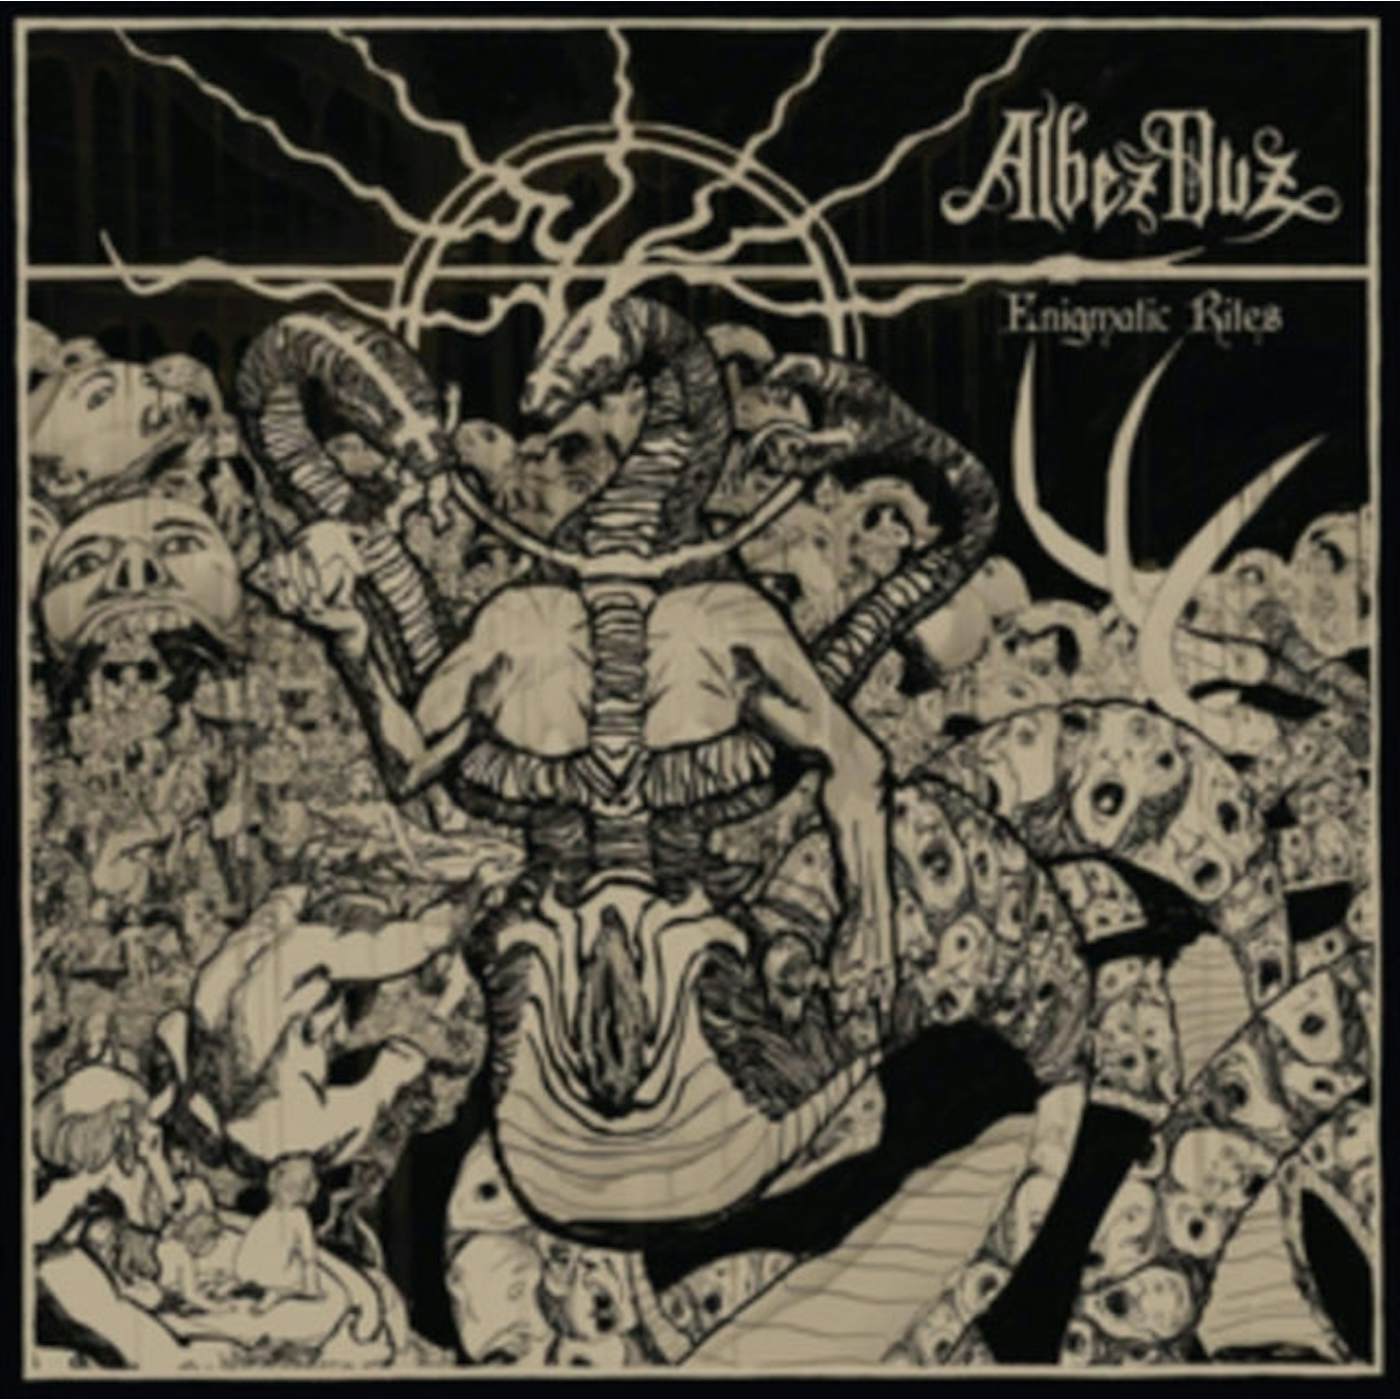 Albez Duz LP - Enigmatic Rites (Vinyl)